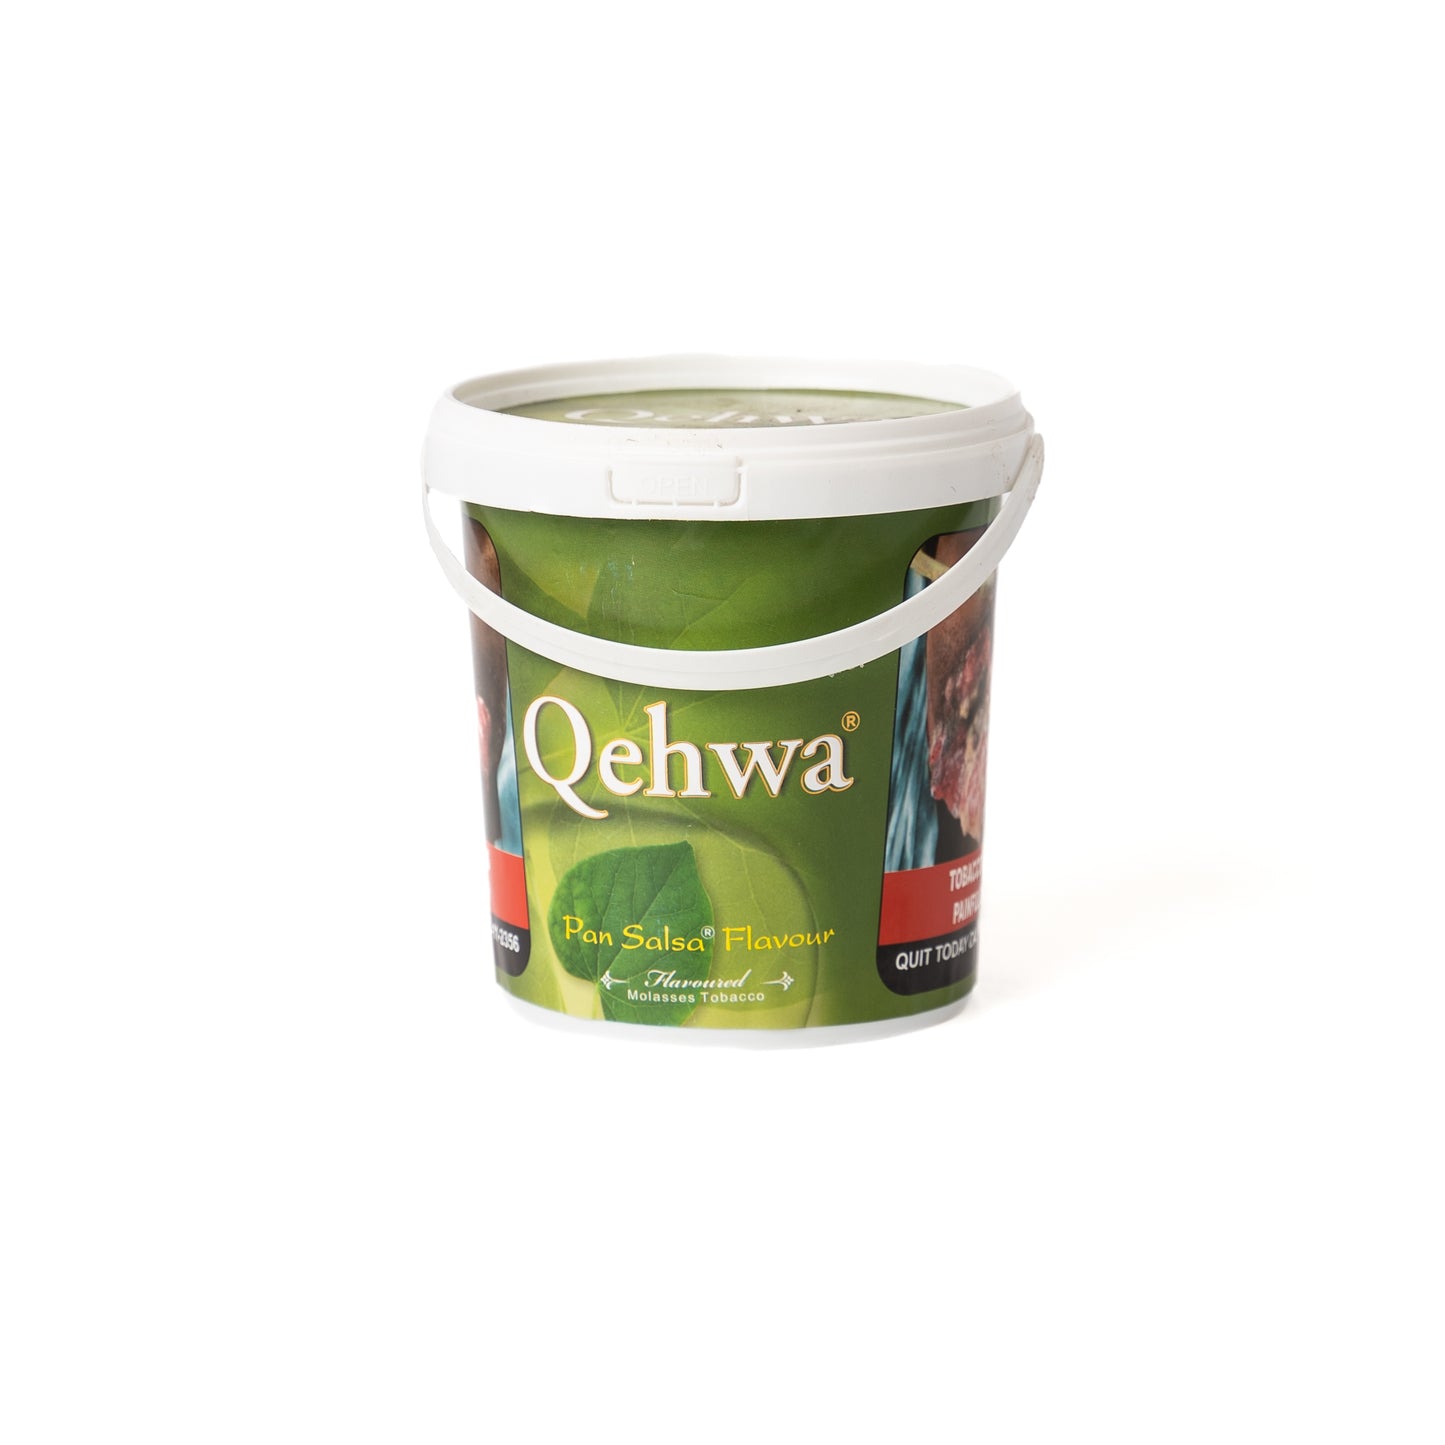 Qehwa Pan Salsa Hookah Flavor - 1kg Bucket